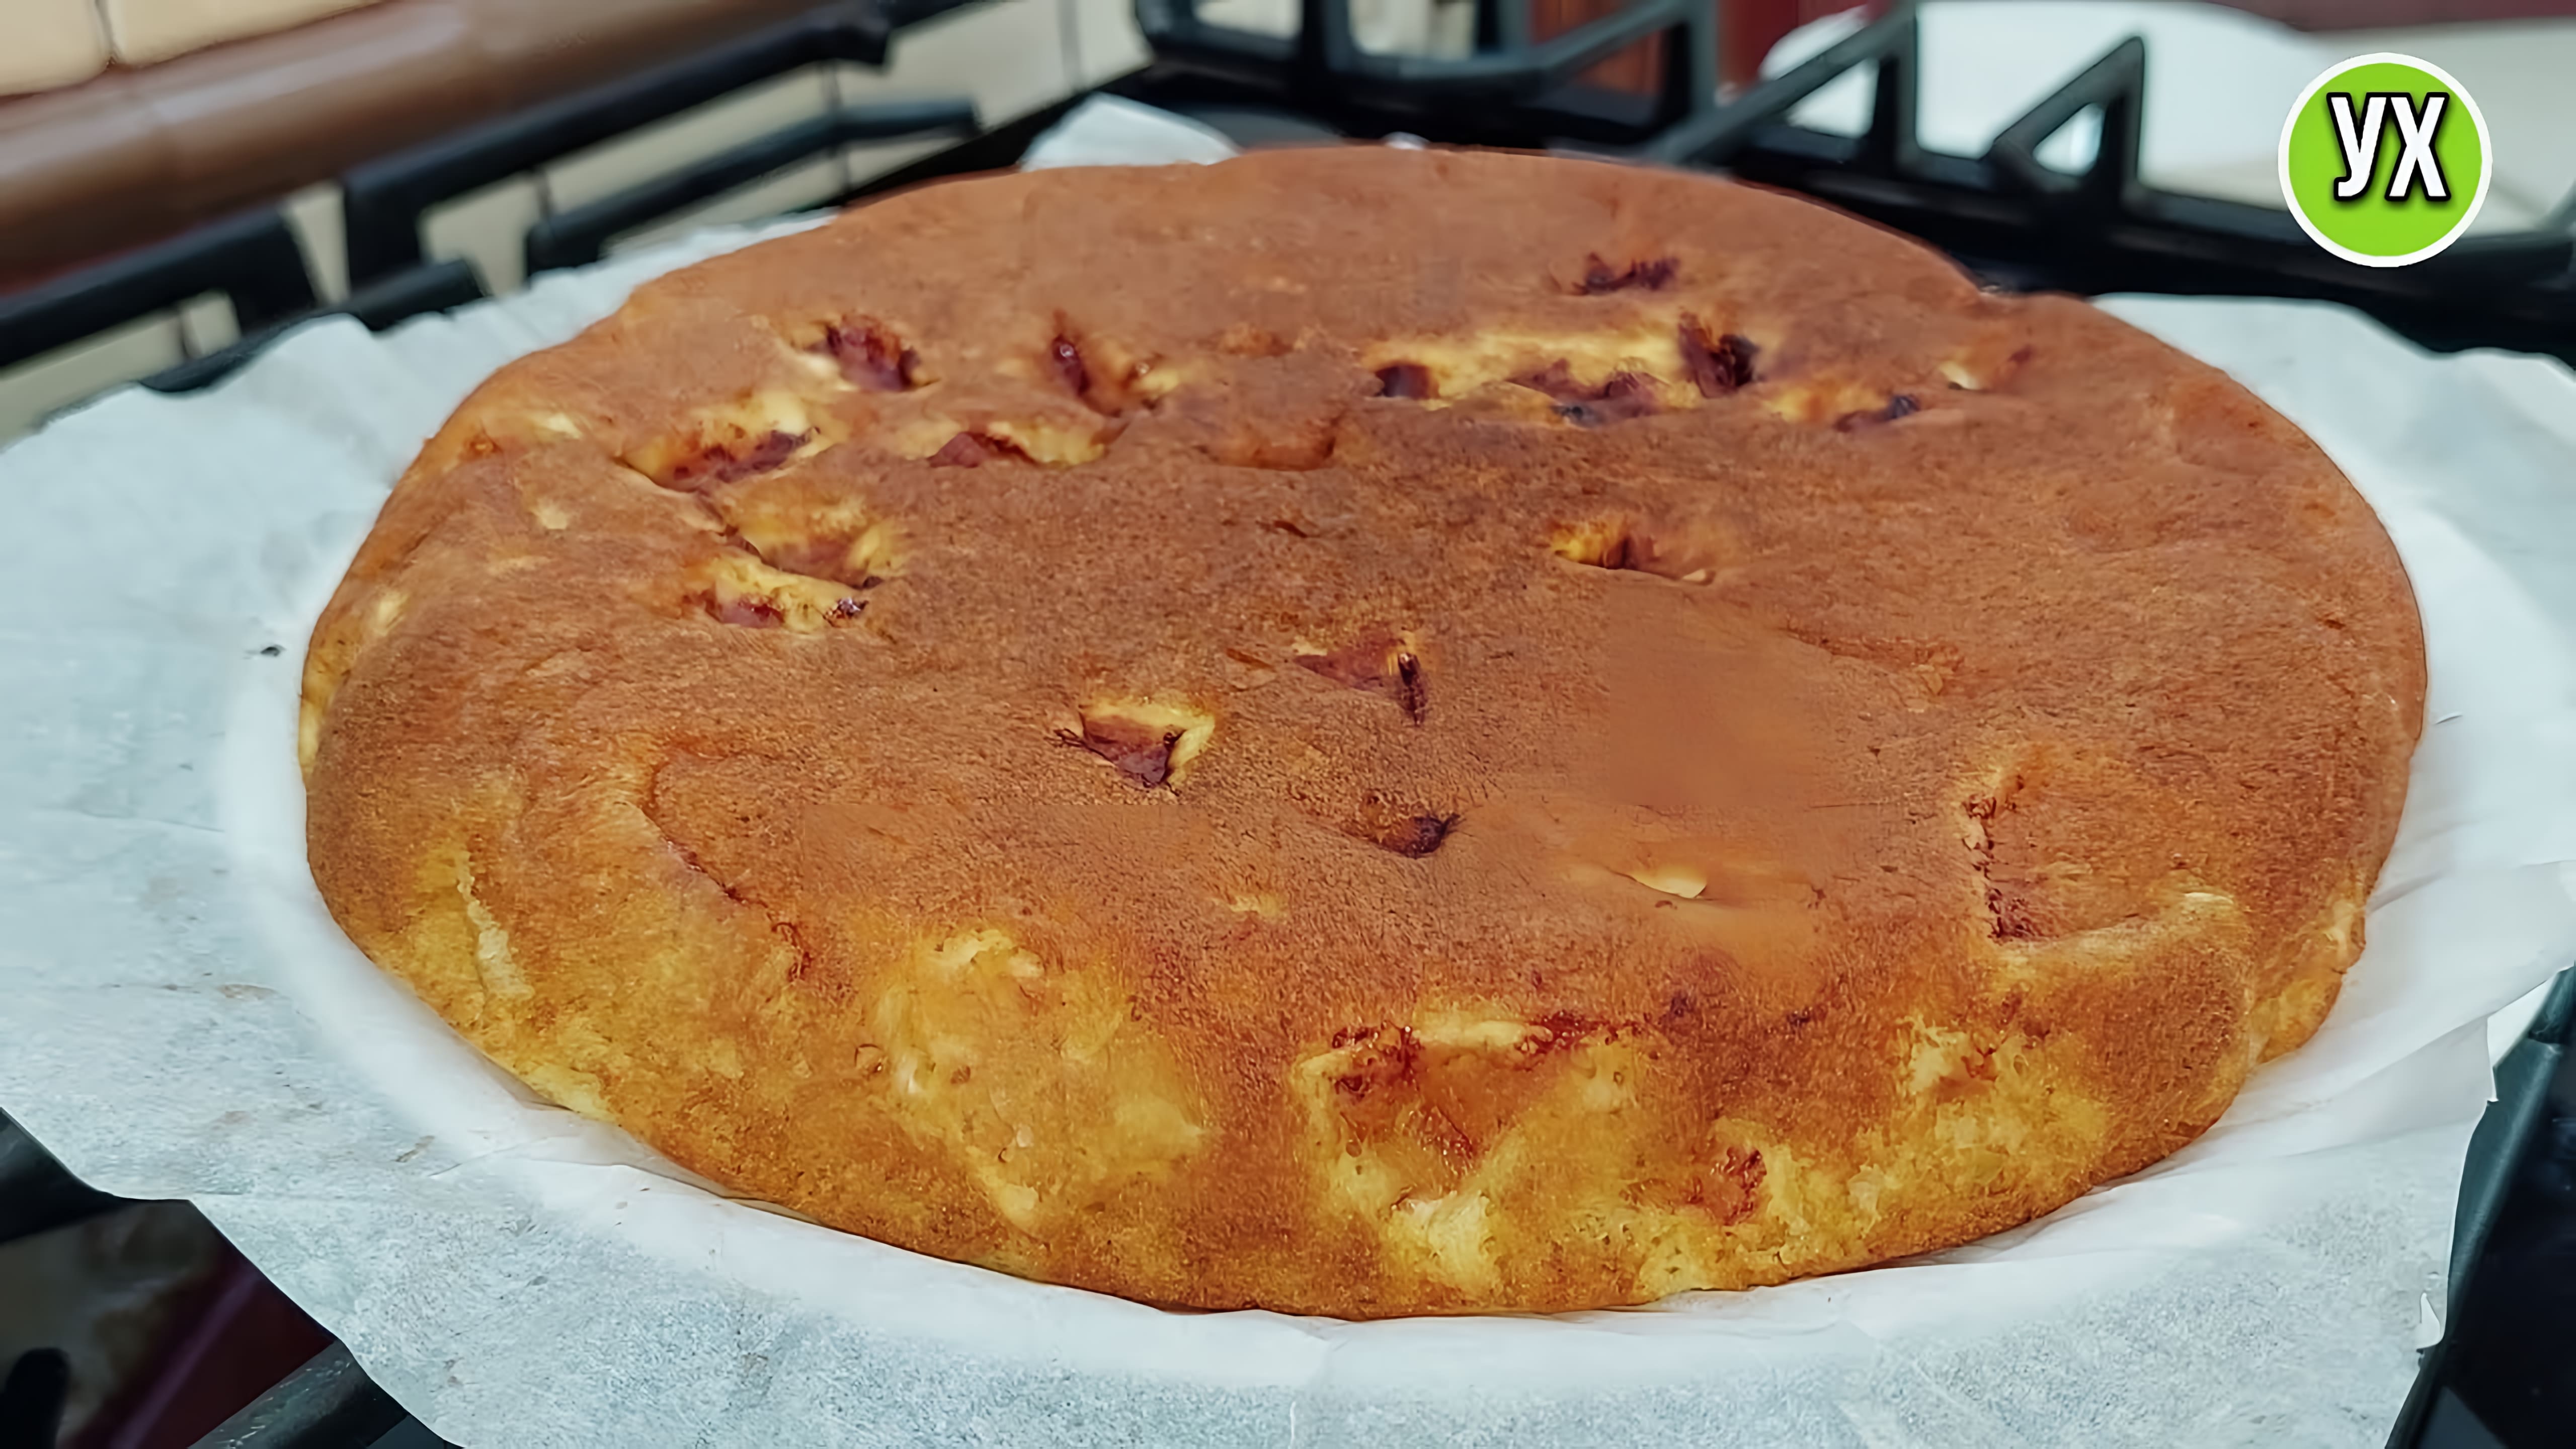 Видео: Он просто тает во рту! Пирог  БЕЗ ДУХОВКИ и миксера — 5 минут на тесто, сковорода и выпечка!